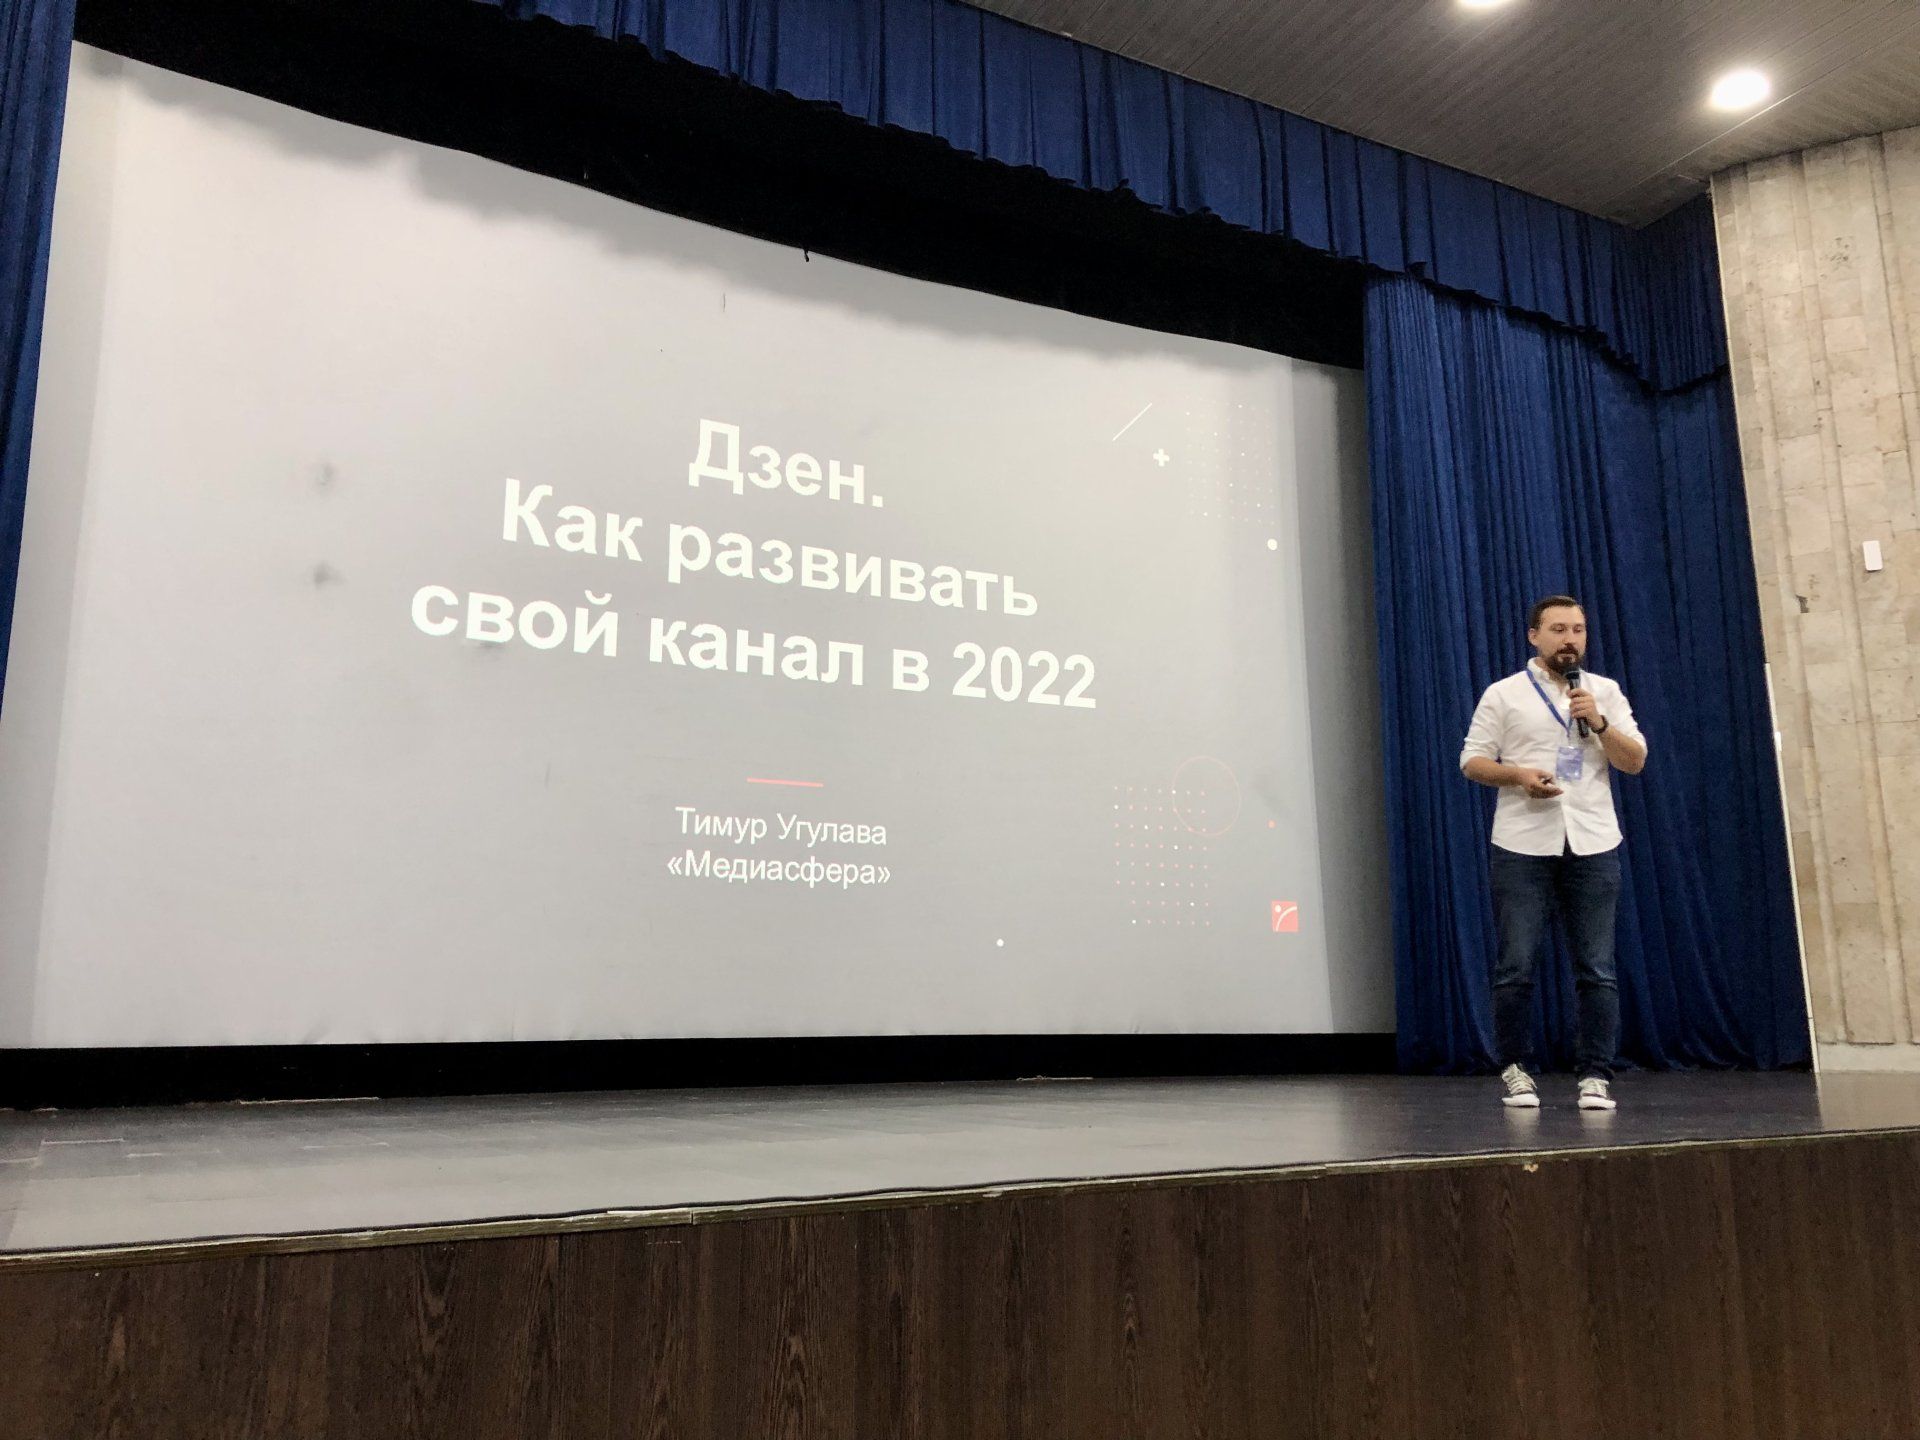 «ВСЯ РОССИЯ – 2022». ДЗЕН. Как развивать свой канал в 2022